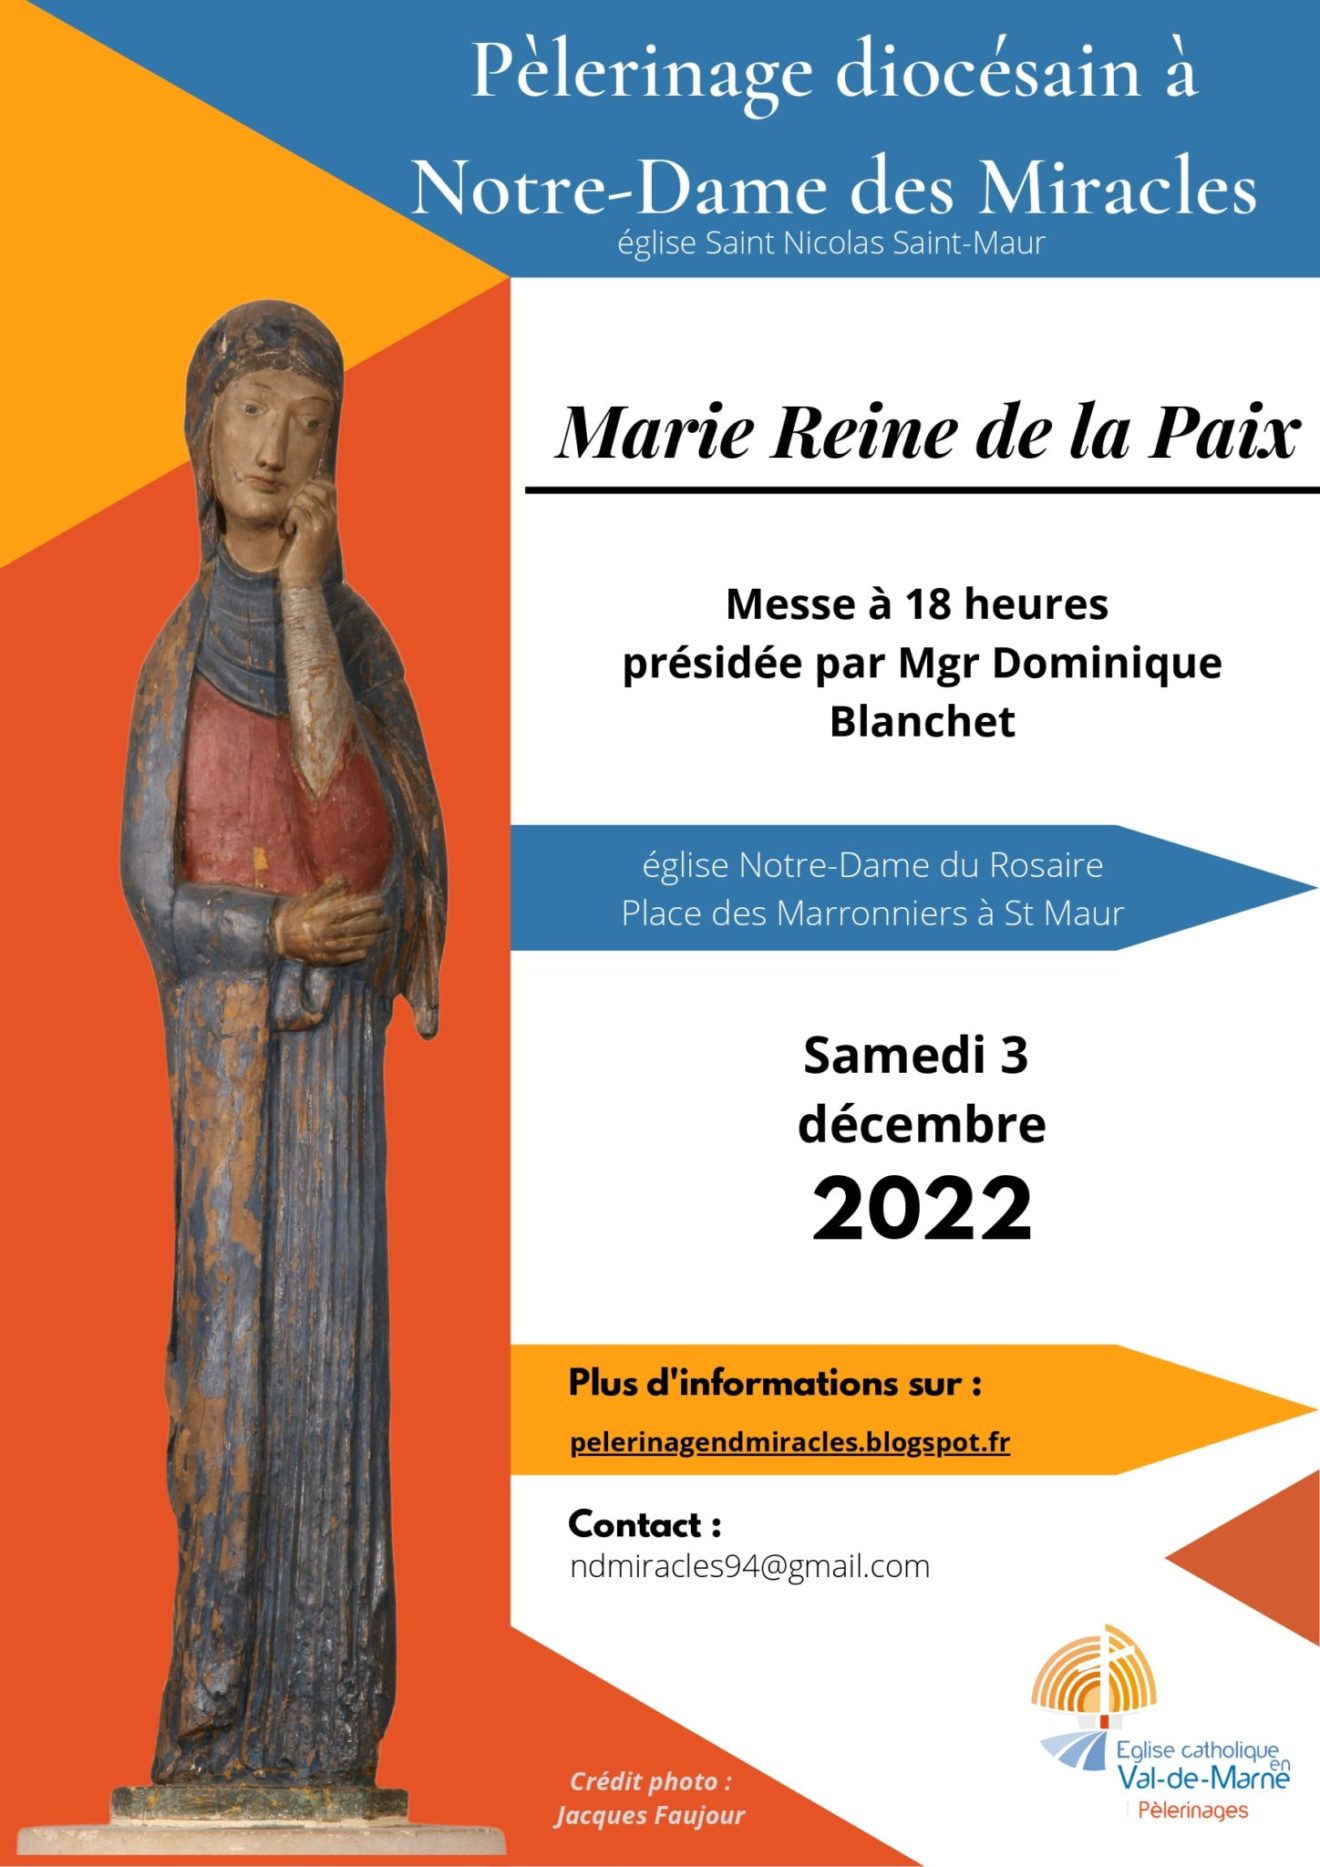 Pèlerinage diocésain à Notre Dame des Miracles samedi 3 décembre 2022